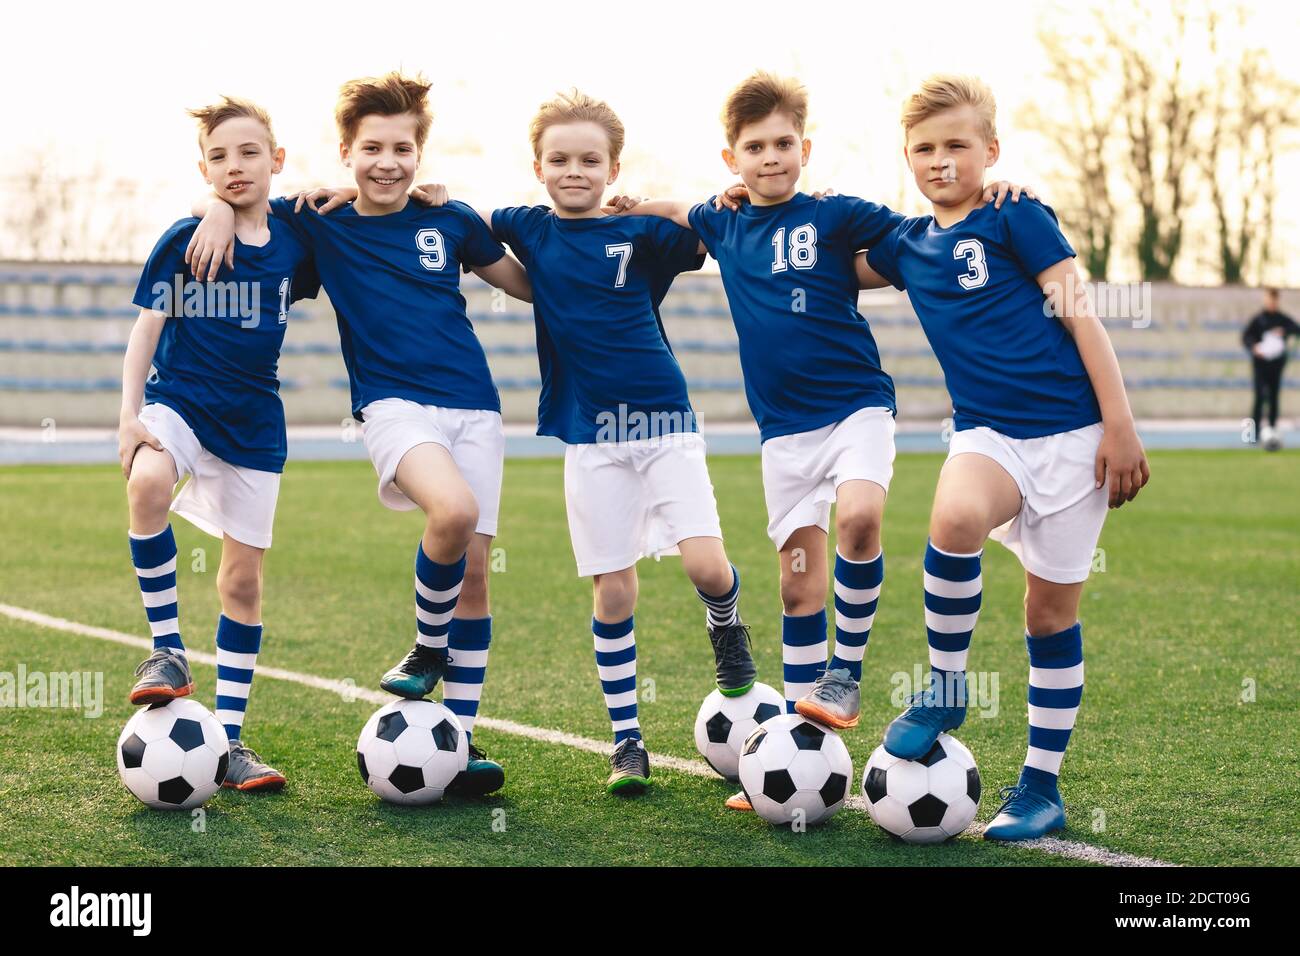 Les garçons sportifs de l'équipe de football. Groupe d'enfants dans le maillot de football Sportswear debout avec des balles sur le terrain. Joyeux sourire enfants dans le thé de sport Banque D'Images